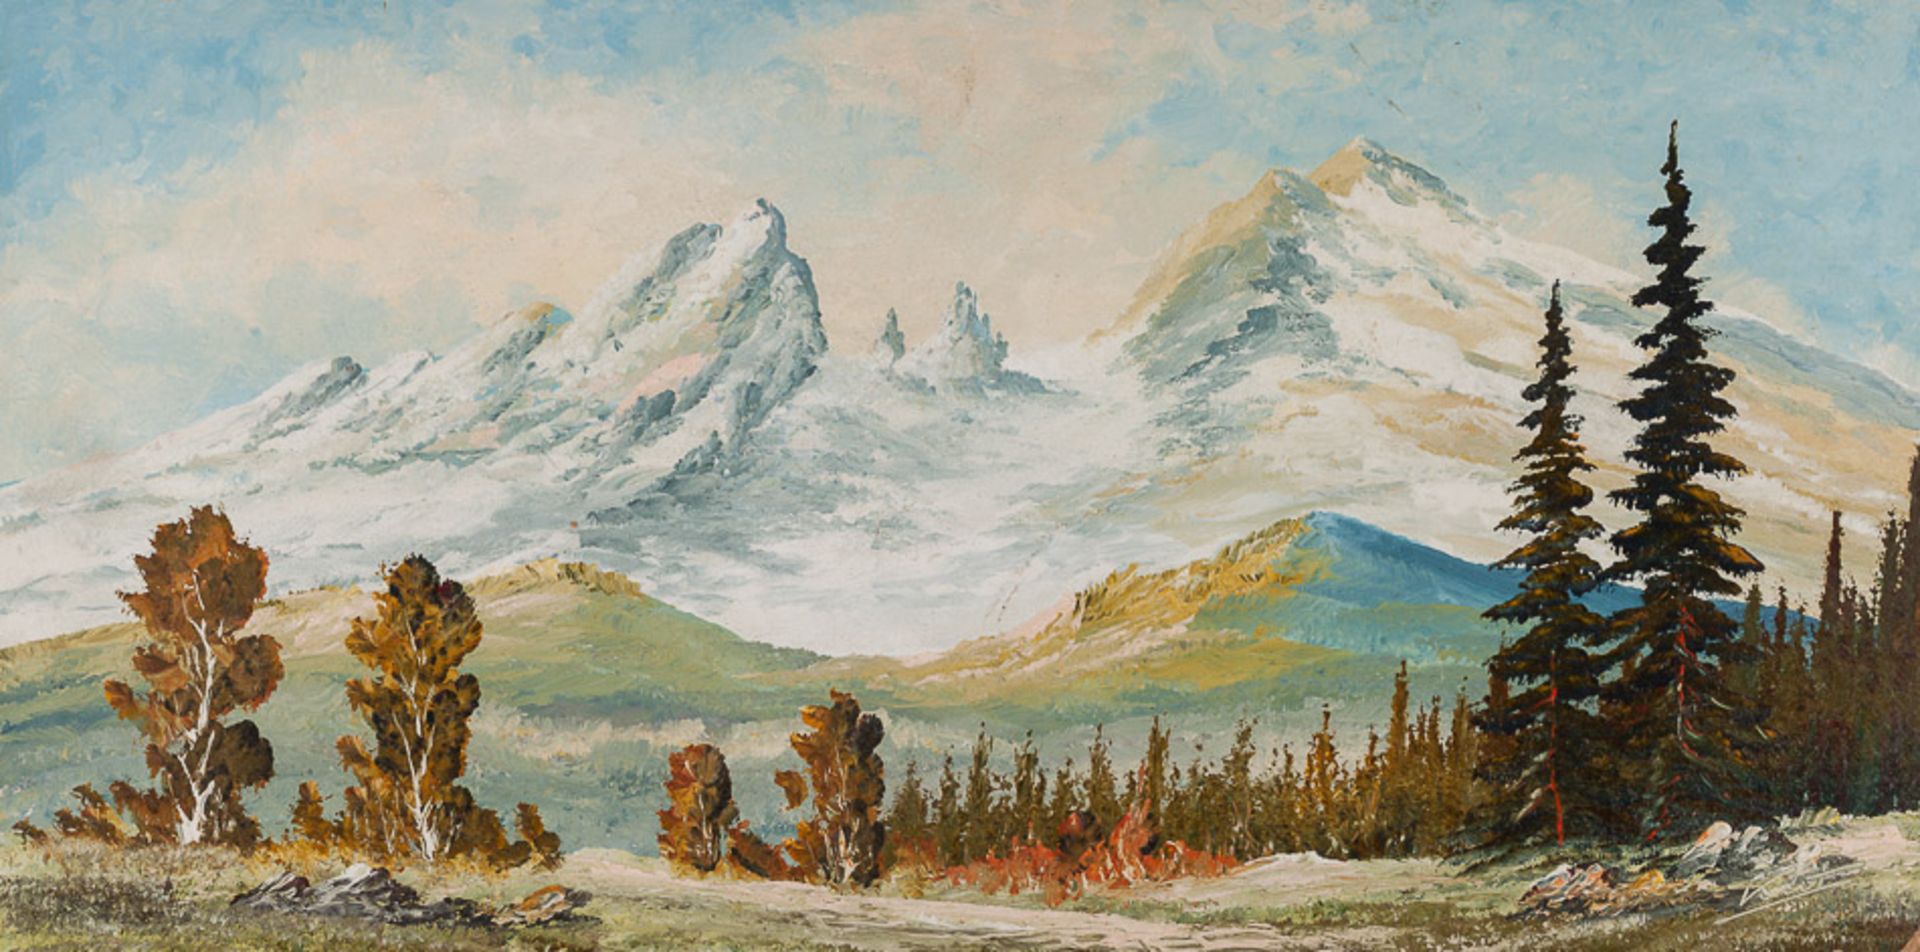 Künstler des 20. Jhd."Gebirgslandschaft"
Gemälde Öl/Hartfaser, 40 cm x 80 cm,
links unten undeutlich